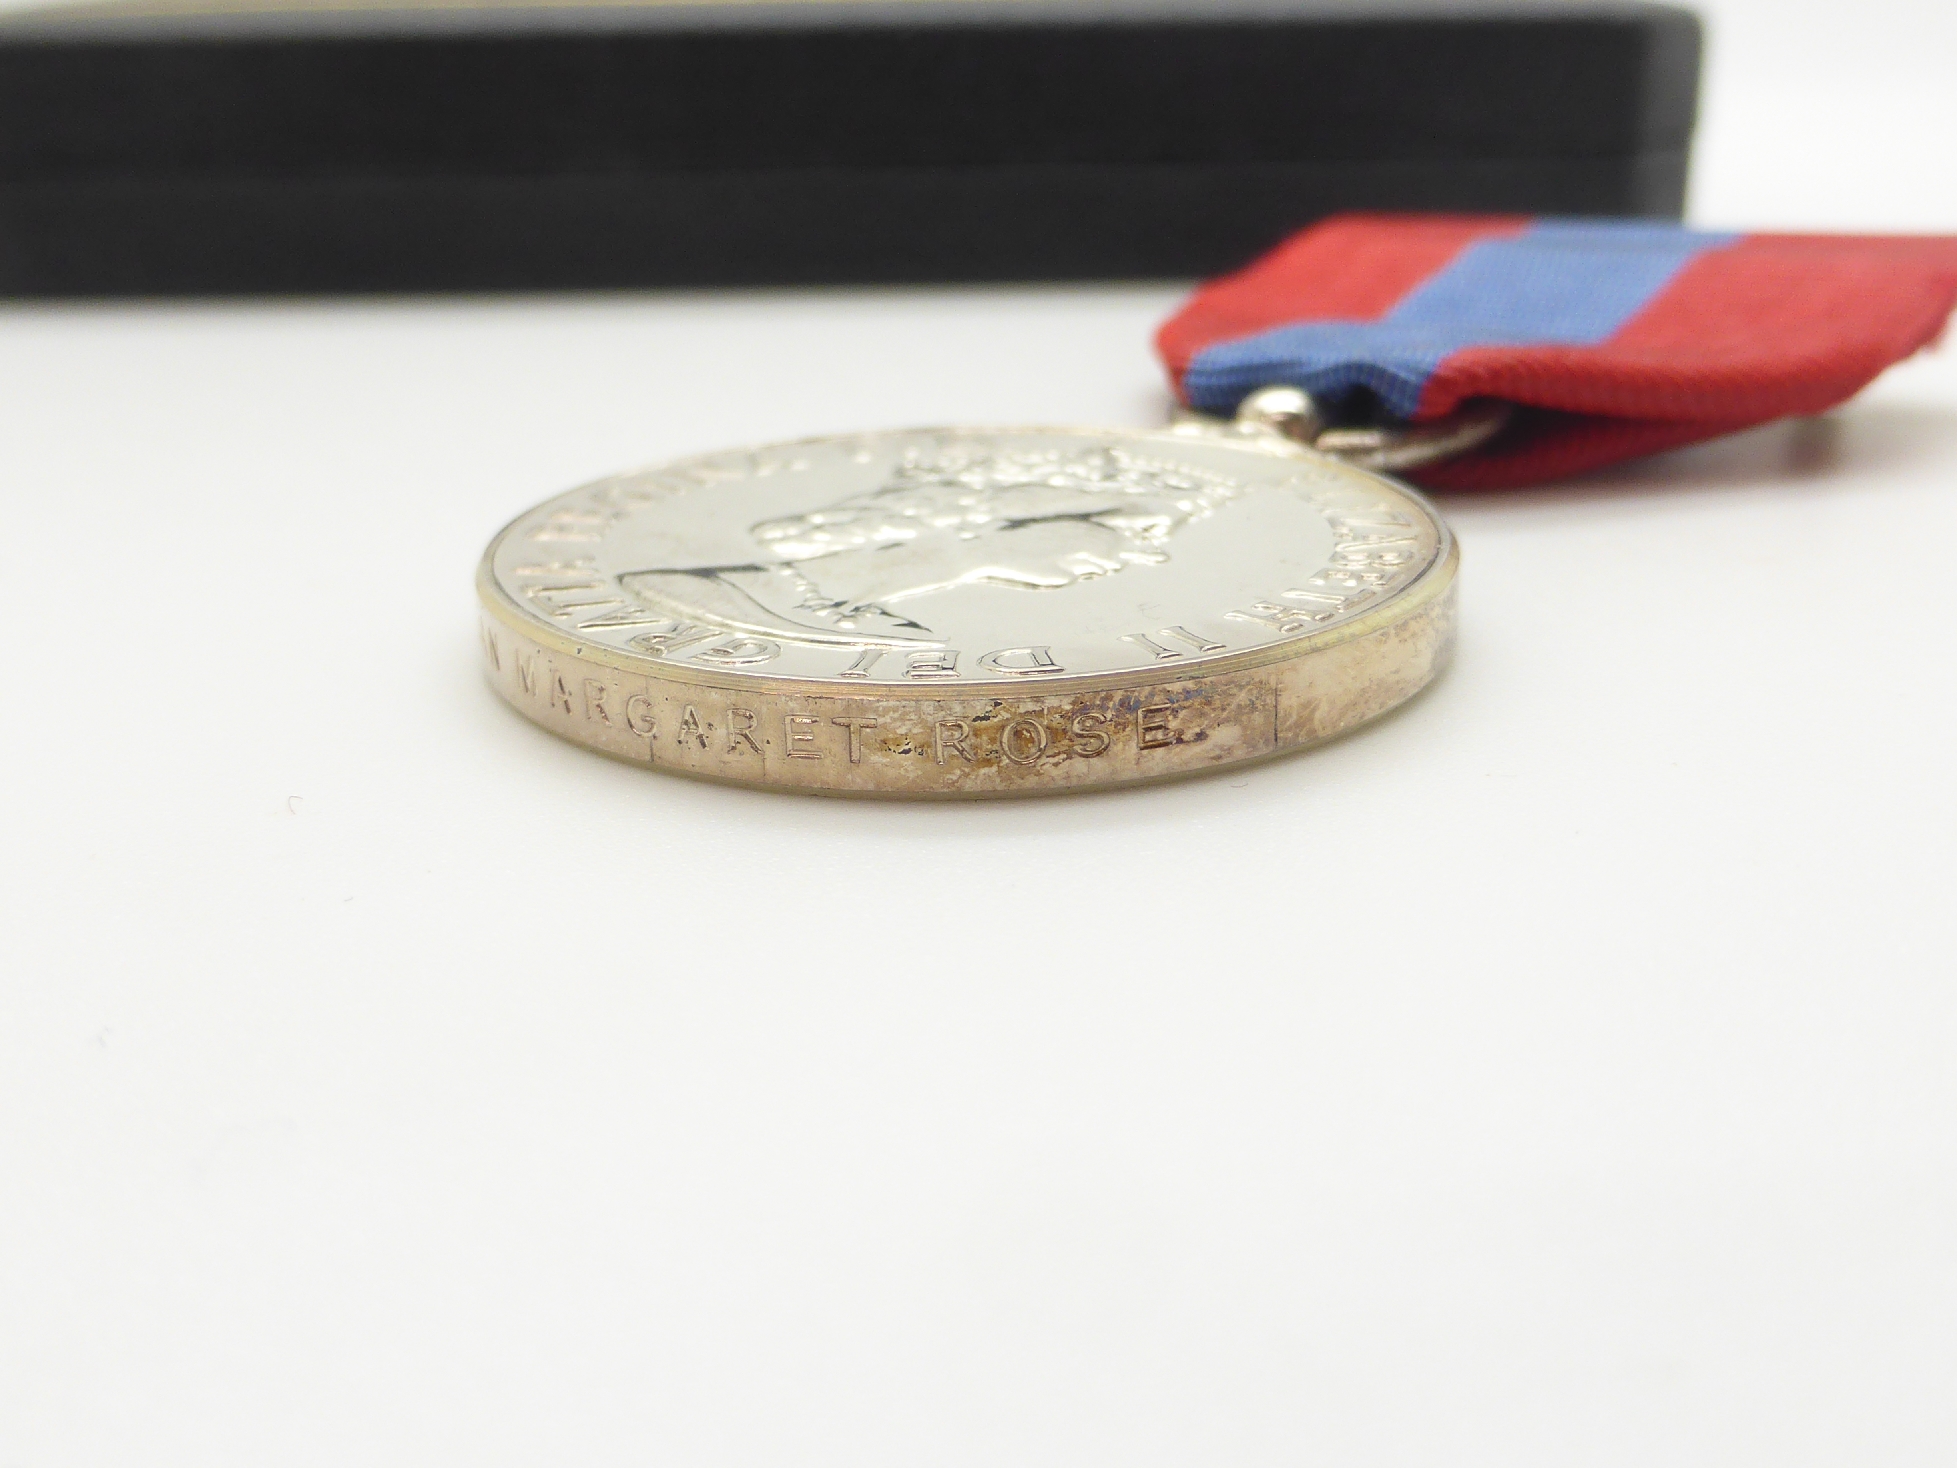 Elizabeth II Imperial Service Medal named to Mrs Jean Margaret Rose together with a WWII War Medal - Image 45 of 47